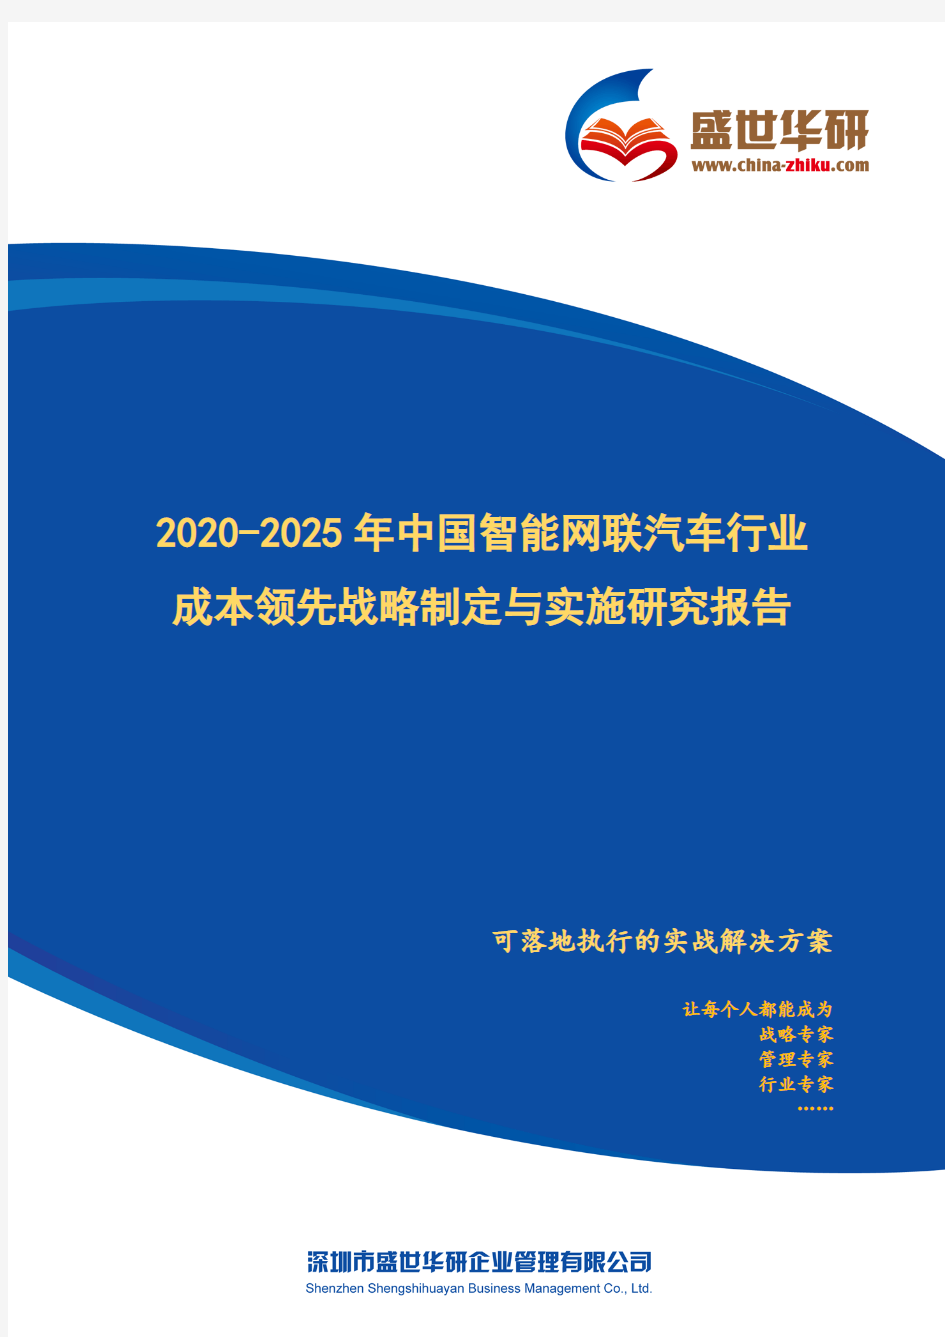 【完整版】2020-2025年中国智能网联汽车行业成本领先战略制定与实施研究报告